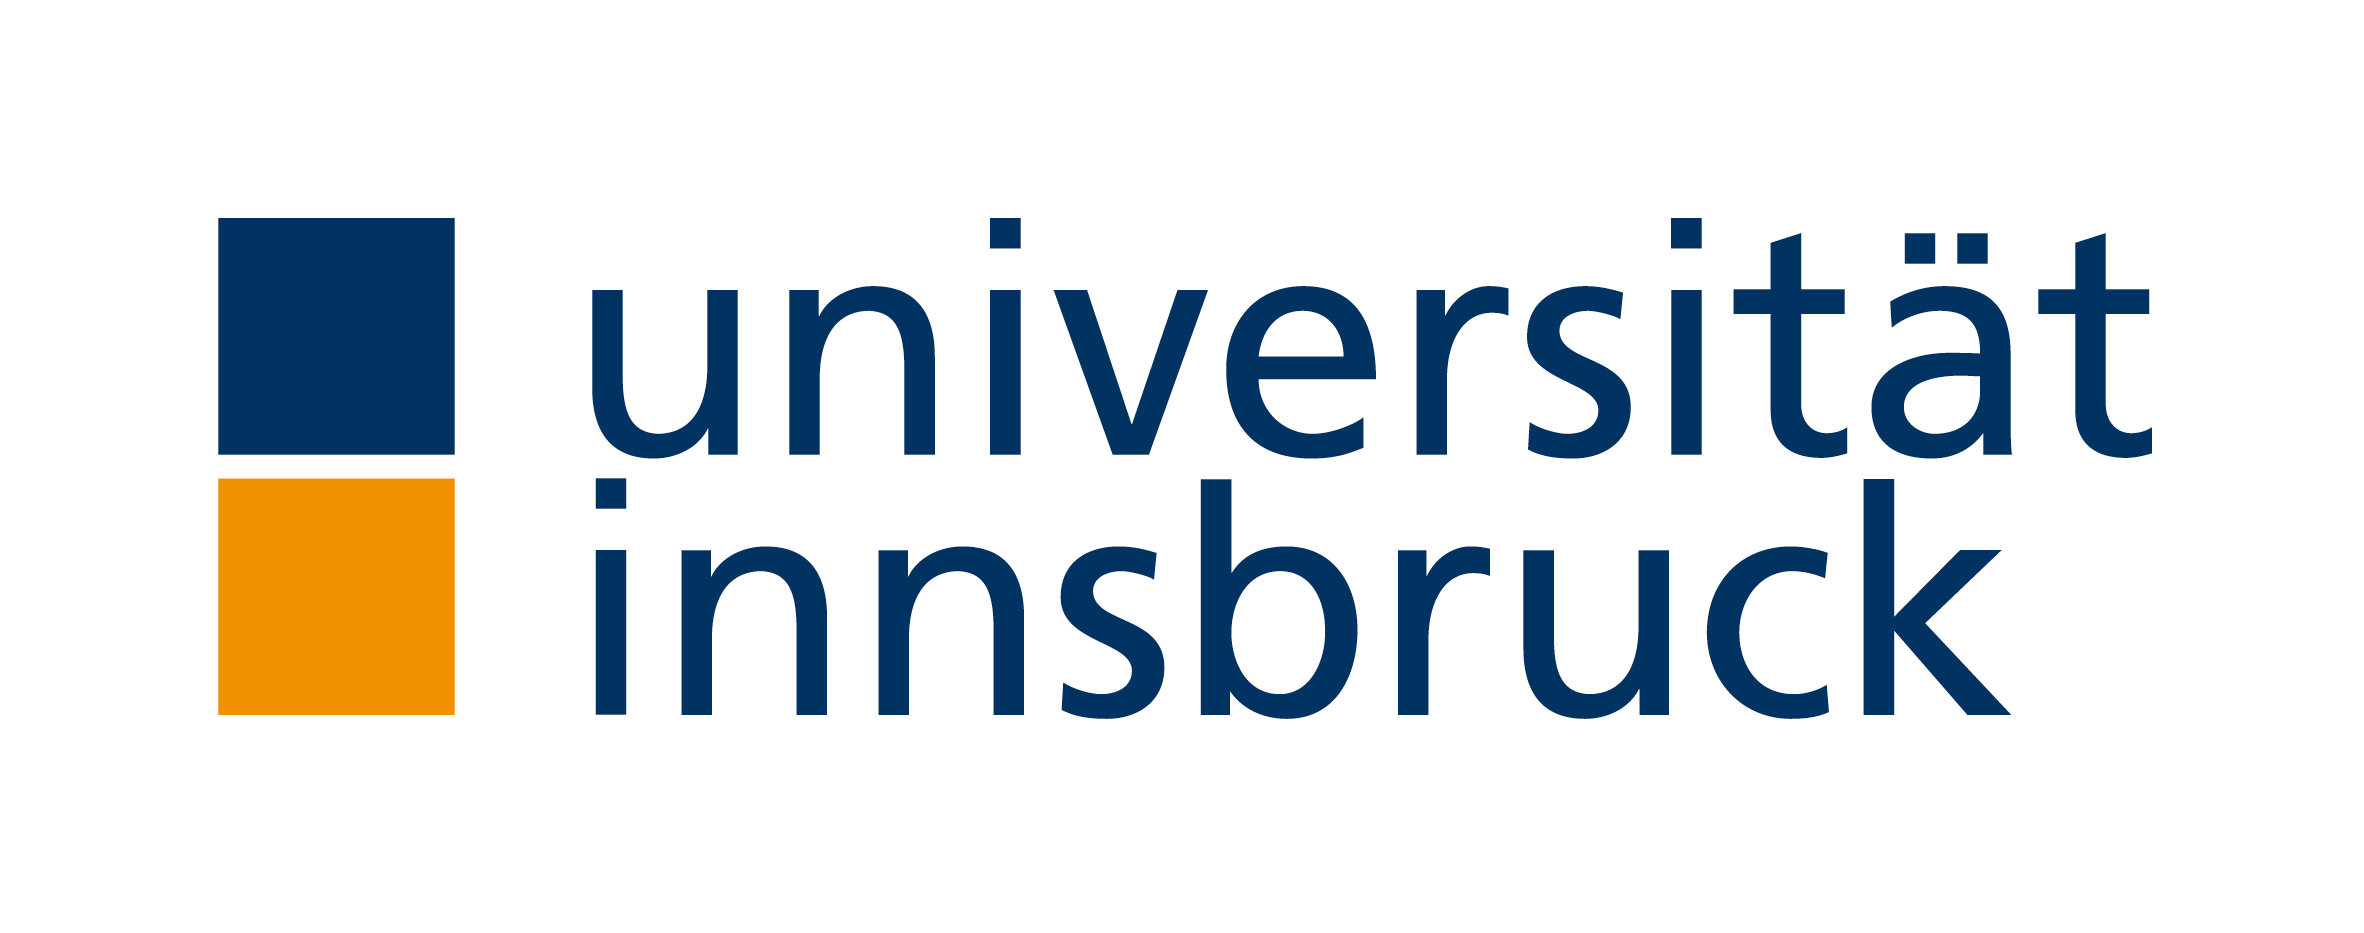 Universidad de Innsbruck - Wikipedia